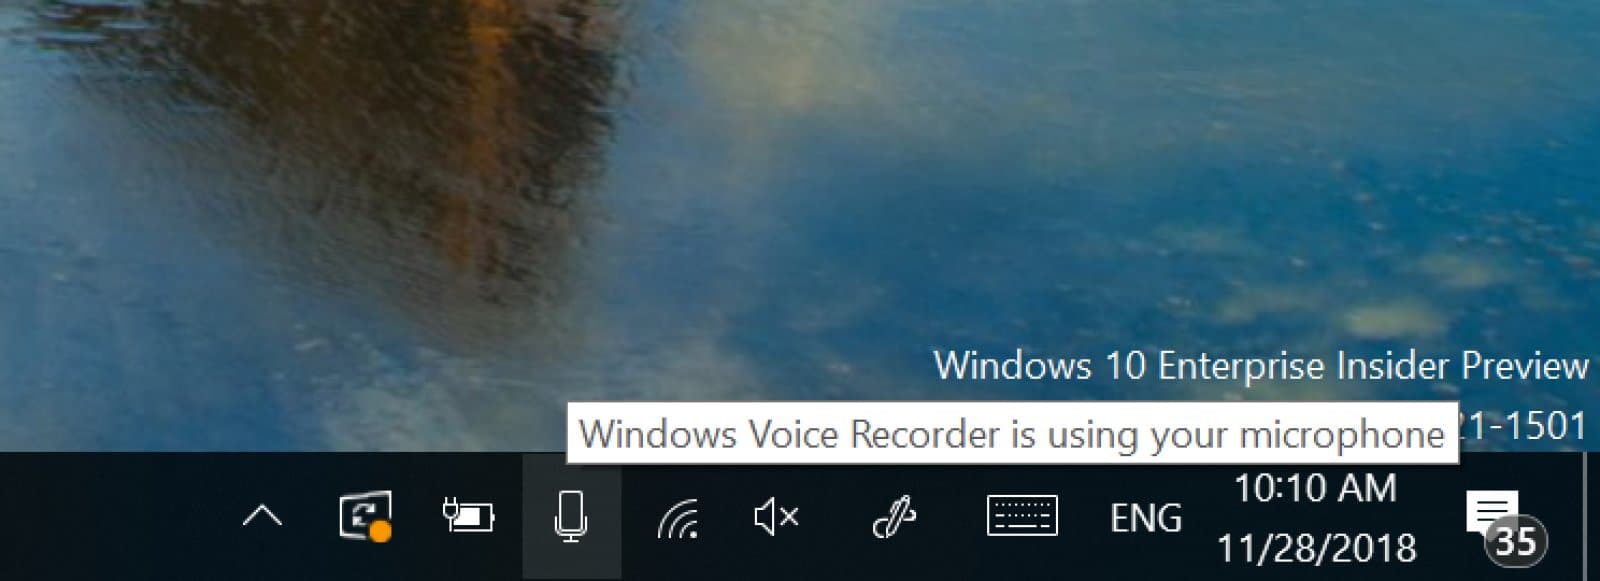 Windows, mikrofon Windows, używanie mikrofonu Windows, aplikacje Windows, microsoft